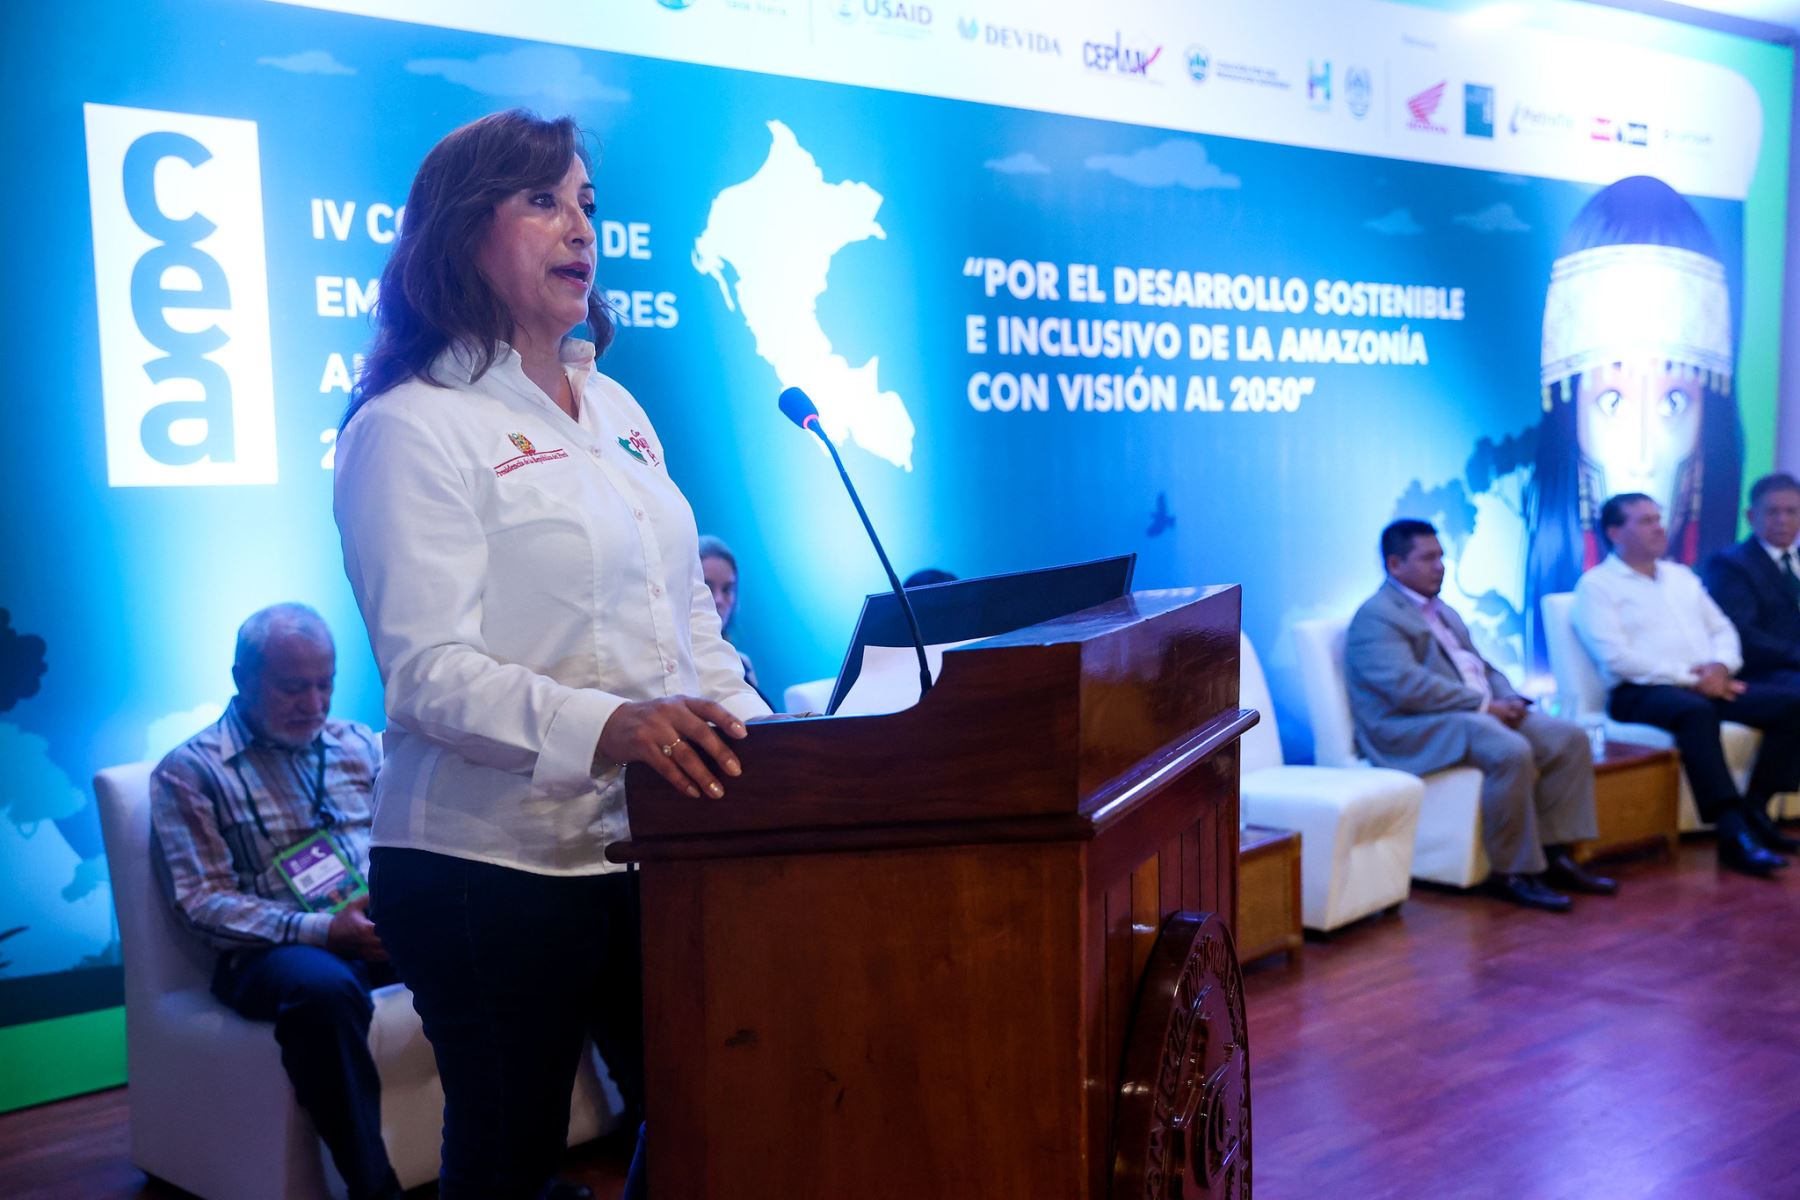 Presidenta Dina Boluarte inaugura el IV Congreso de Emprendedores Amazónicos: “Por el desarrollo sostenible e inclusivo de la Amazonía con visión al 2050” en Loreto. Foto: ANDINA/ Prensa Presidencia